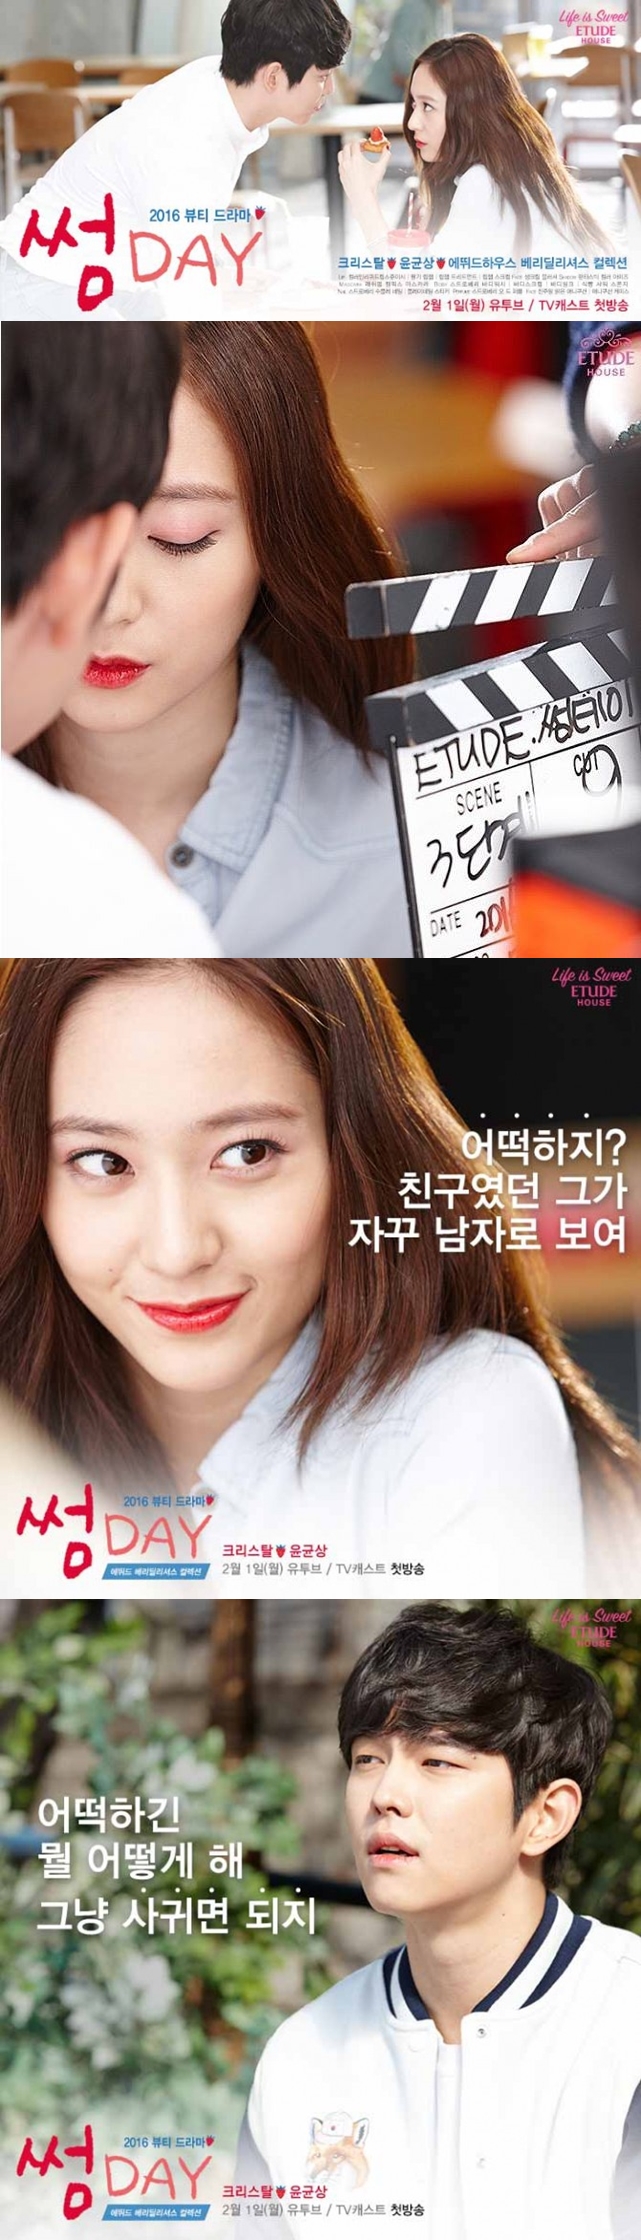 Krystal dipasangkan dengan Yoon Kyun Sang dalam drama iklan baru. © Etude House Facebook